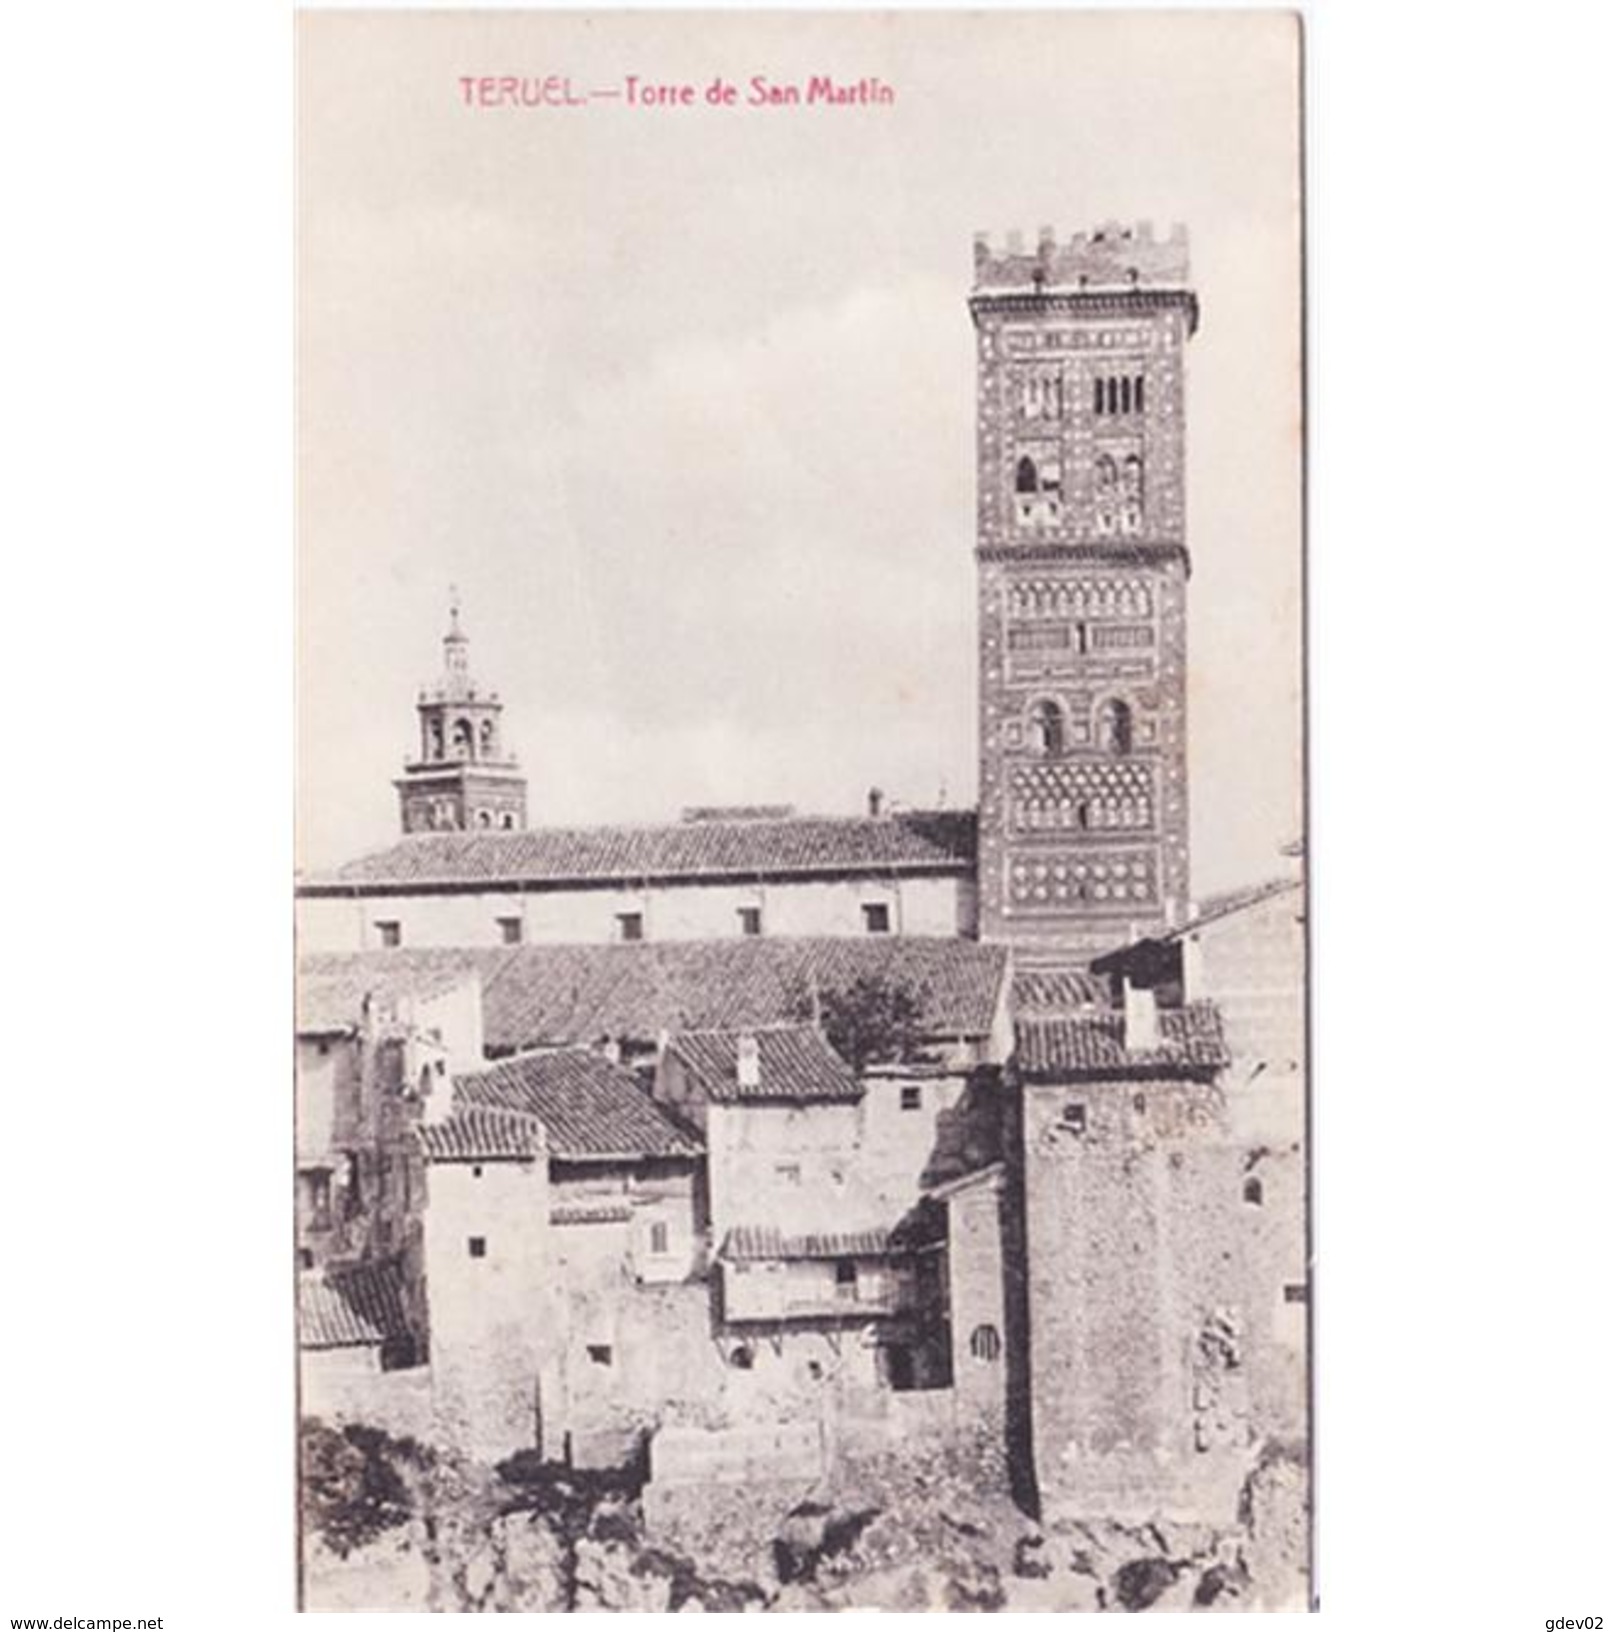 TRLTPA2659-LFTD9152.Tarjea Postal De TERUEL.casas,iglesia Y LA TORRE DE SAN MARTIN En TERUEL - Teruel